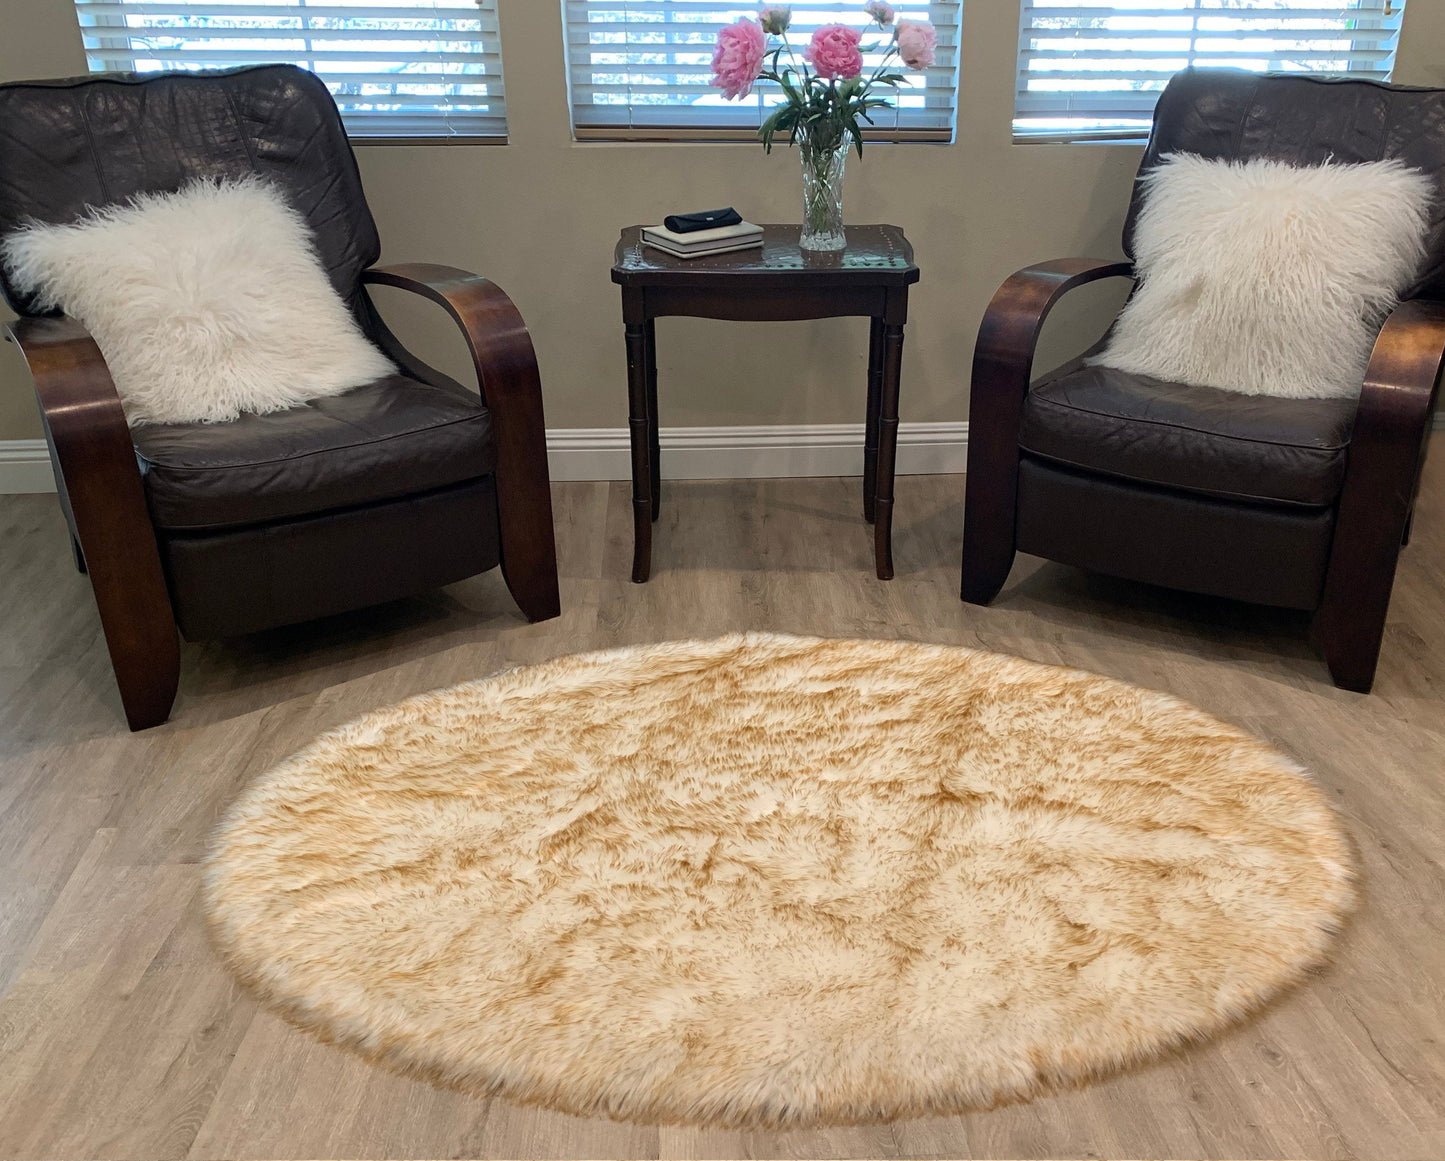 Faux sheepskin rug Oval Shaped 6'X9'(180cm x 270cm)